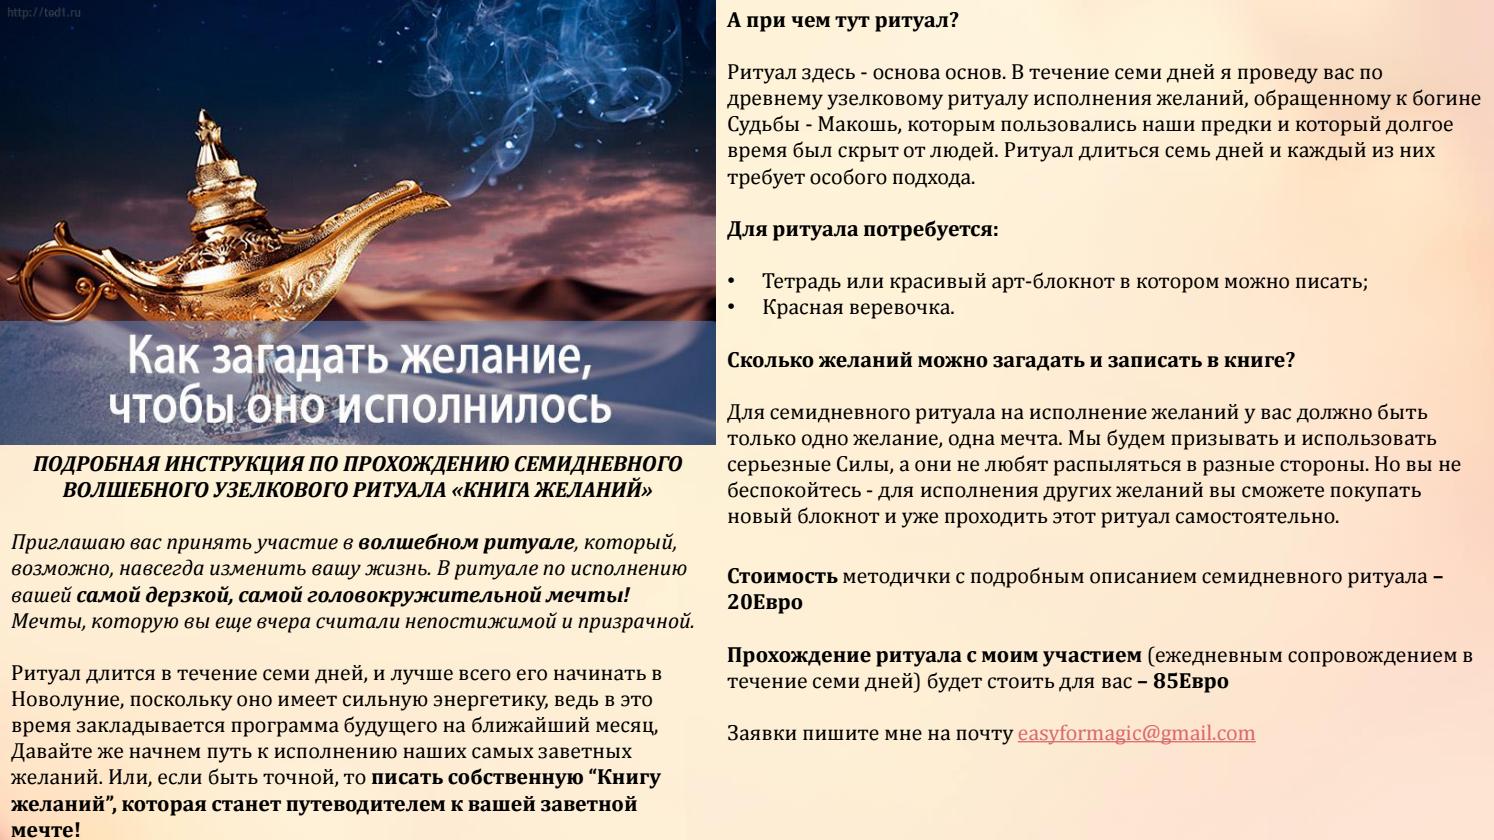 Желания на новый год 2021. как правильно загадать желание, чтобы сбылось. способы загадать желание. * vsetemi.ru